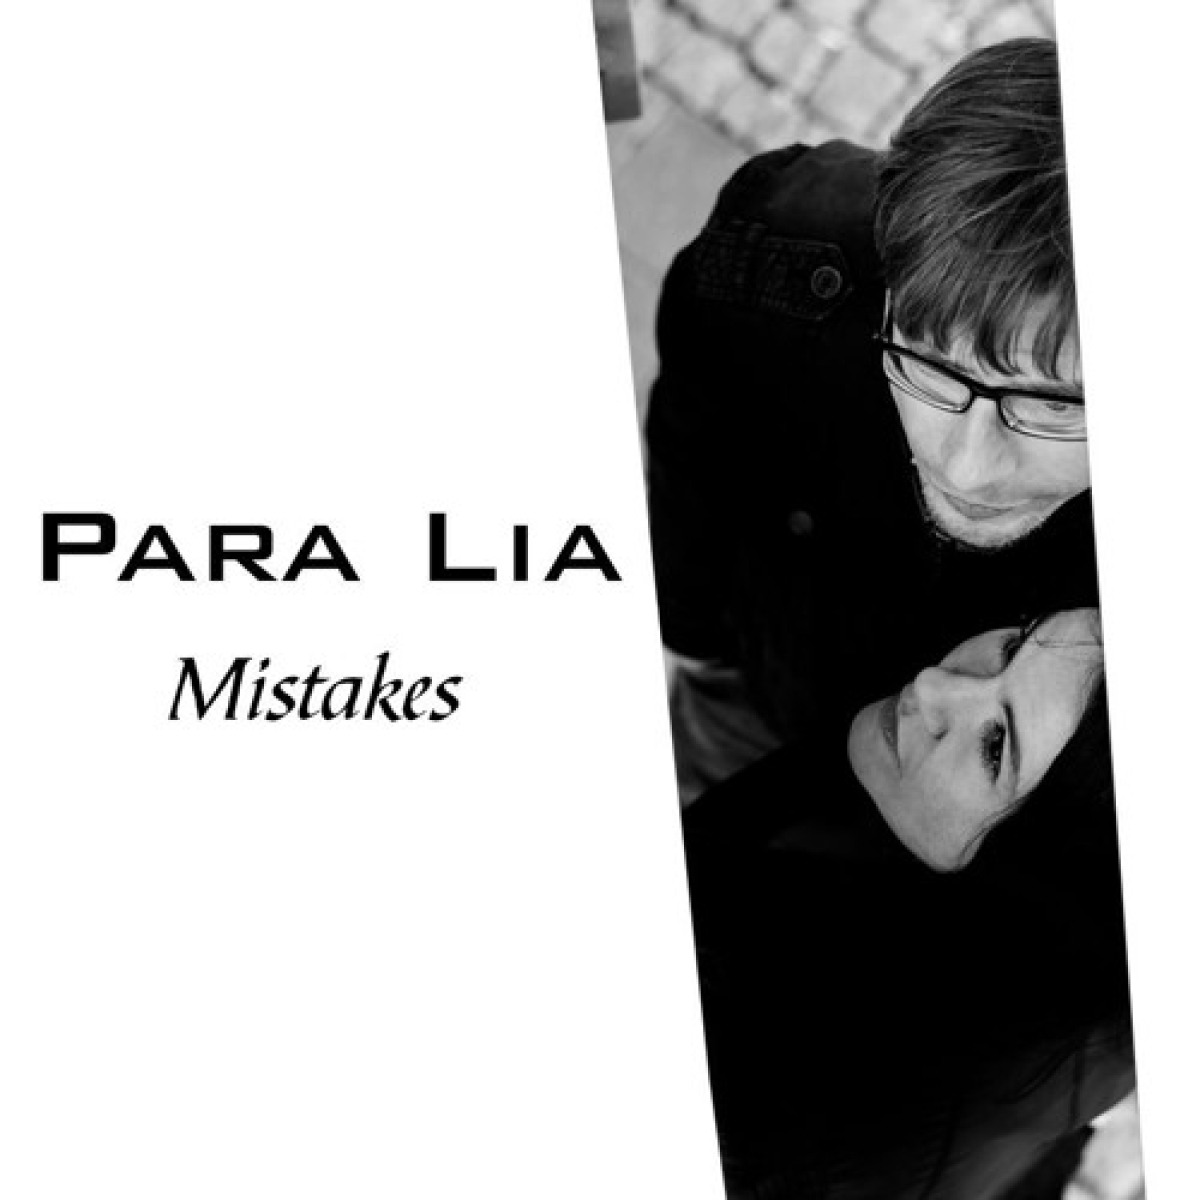 PARA LIA – single “Mistakes”